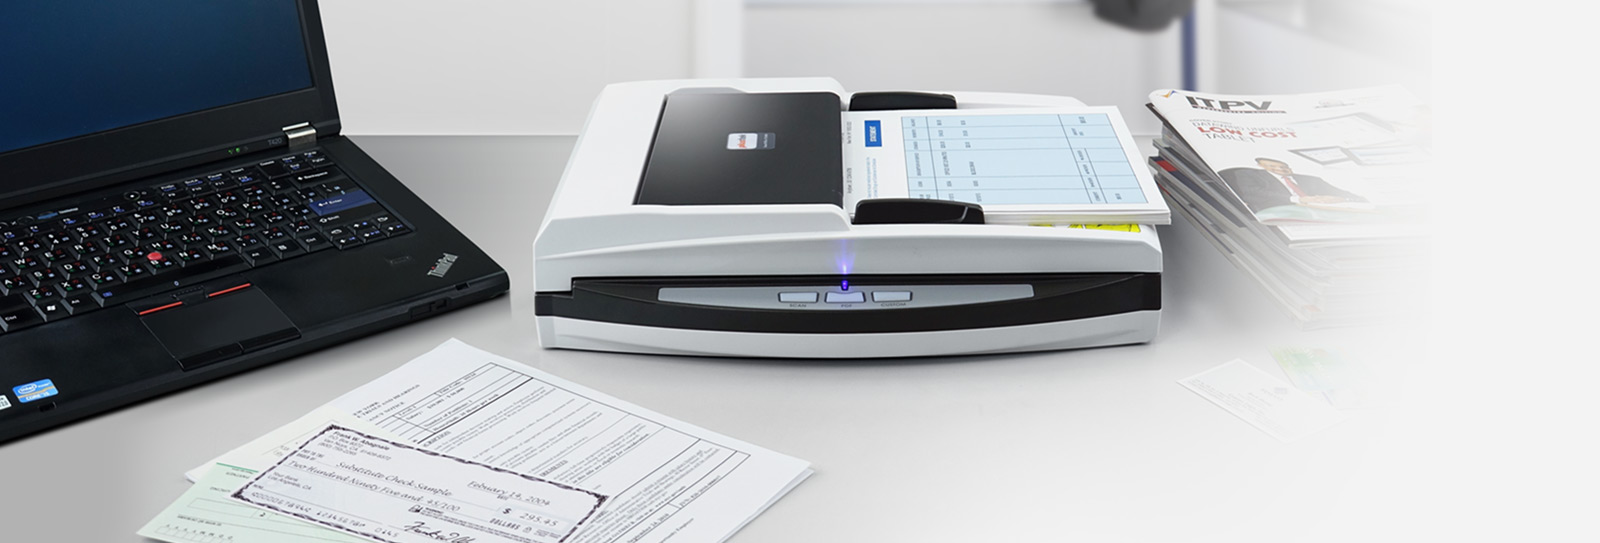 Plustek ofrece este escáner para las oficinas que necesitan escanear documentos frágiles e importantes, pero que también desean disponer de la capacidad de alimentación automática de documentos